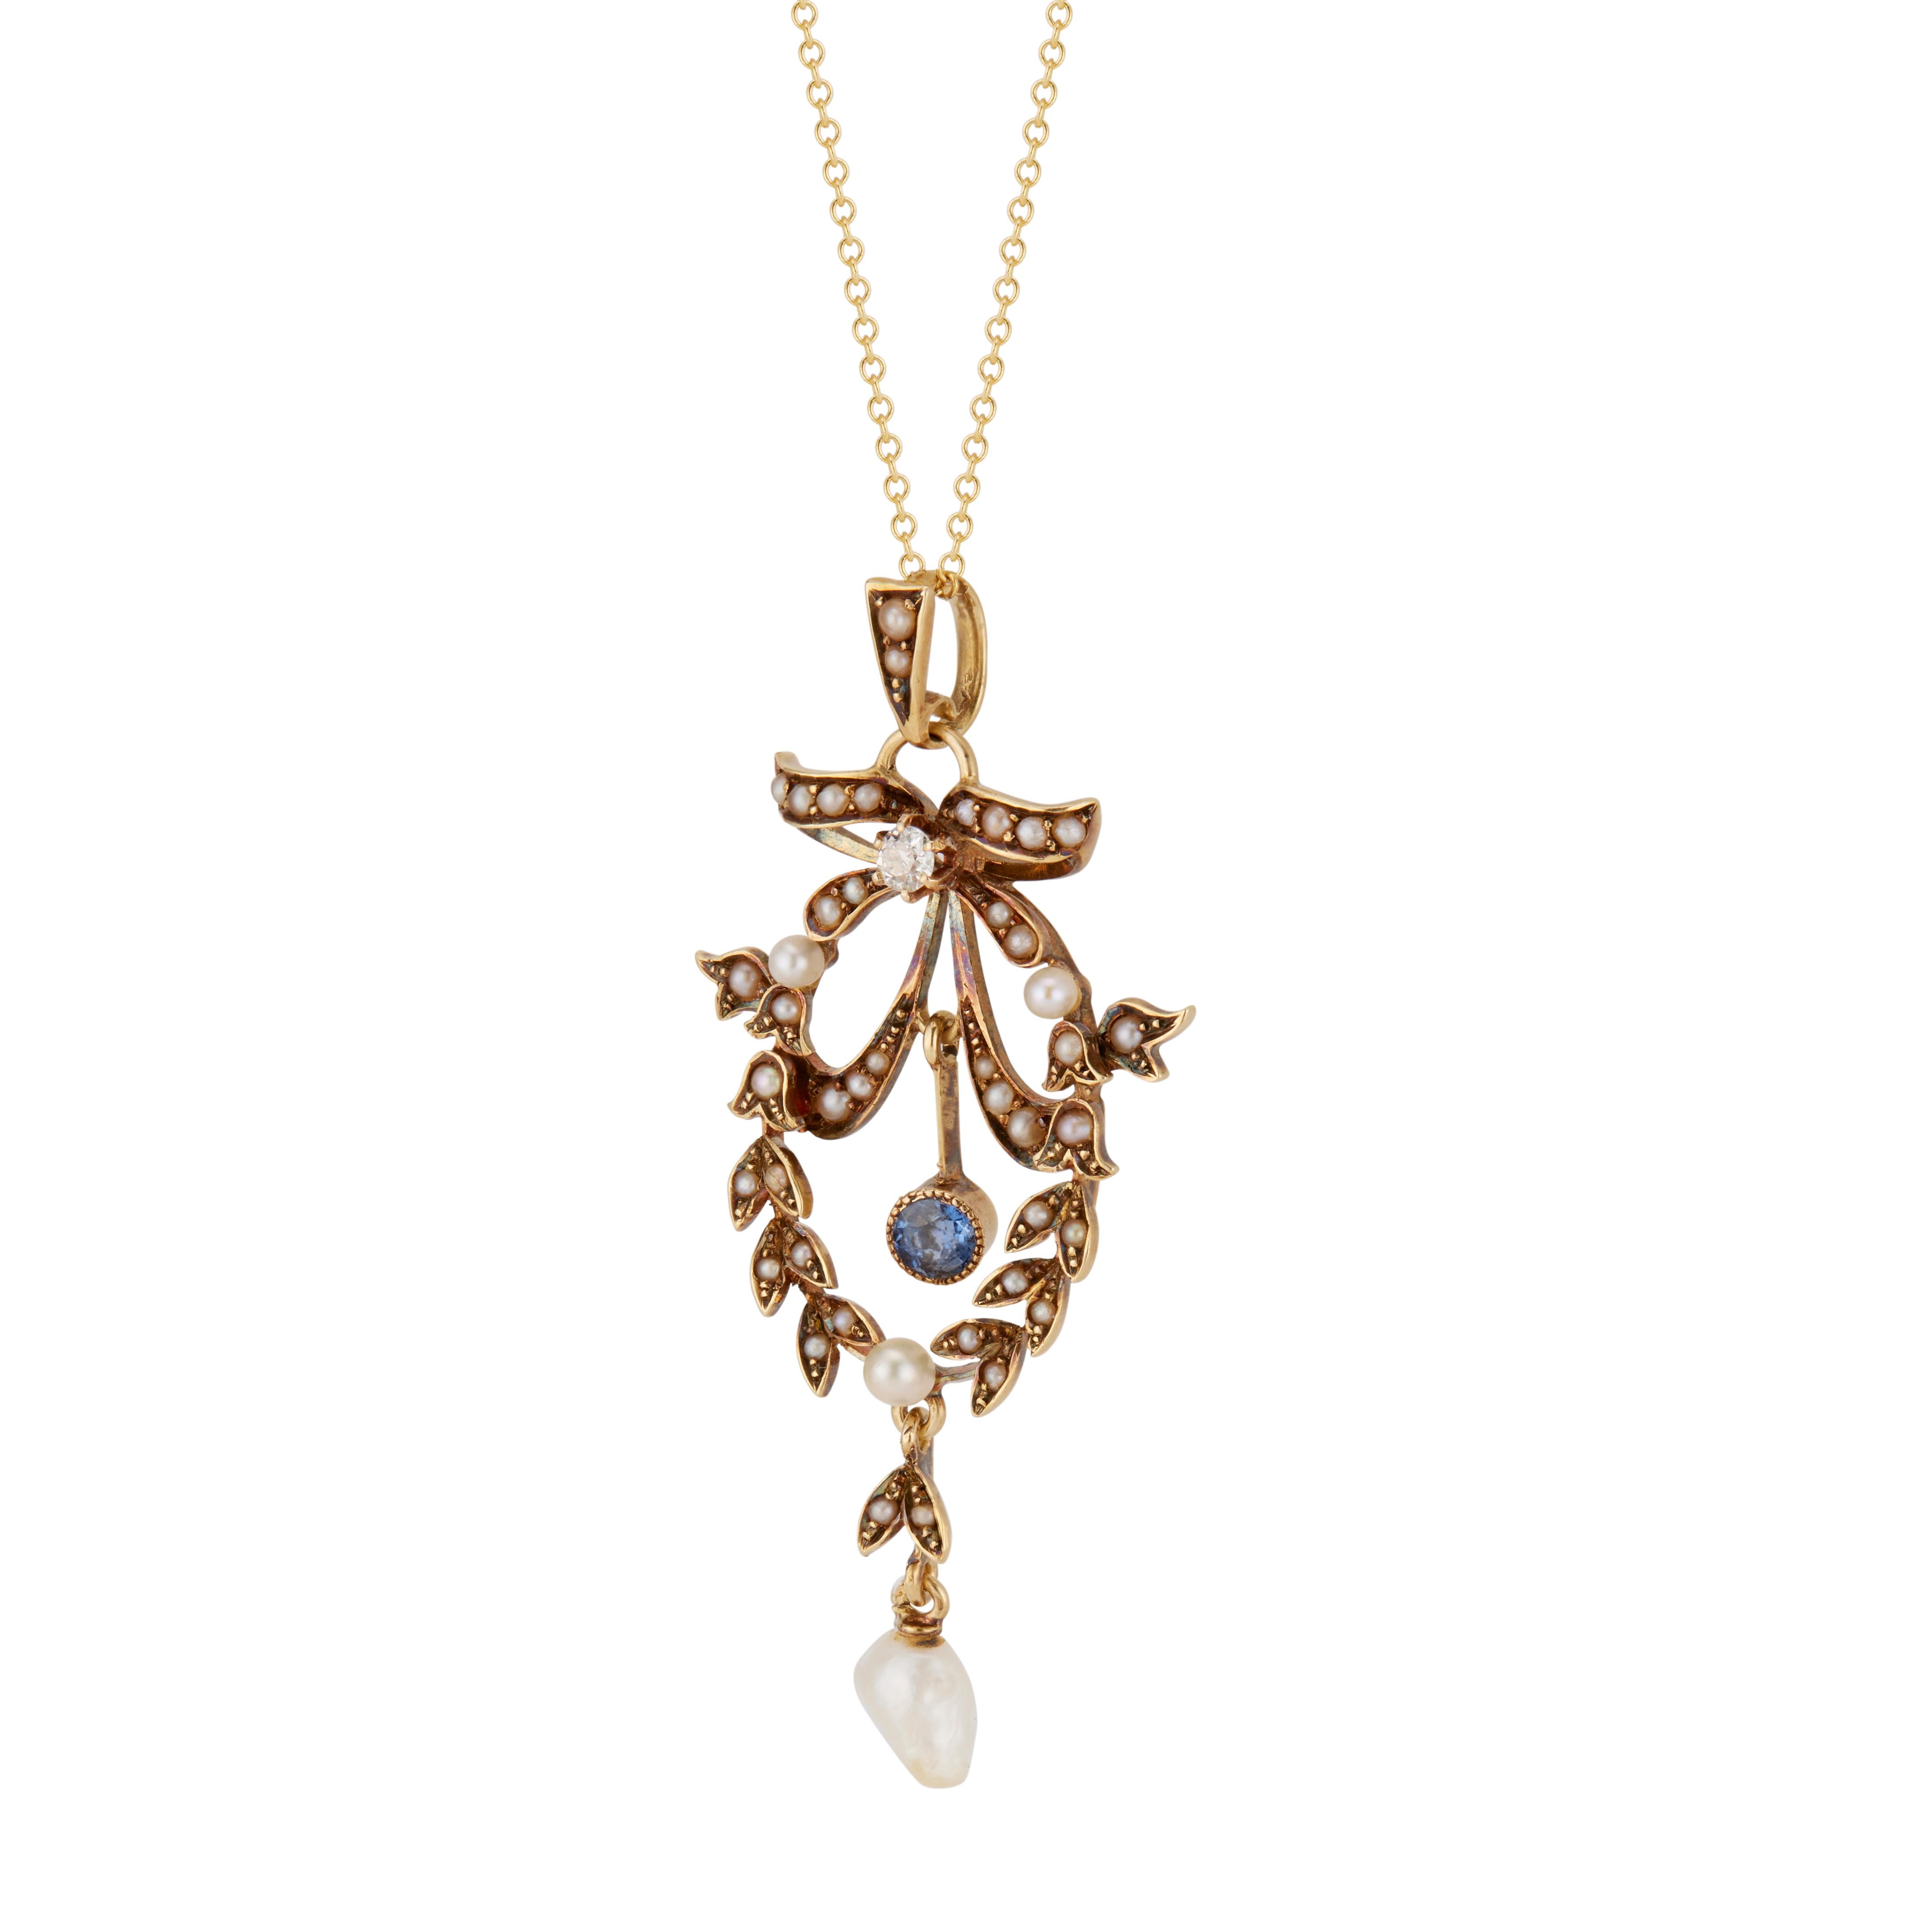 Originaler viktorianischer Anhänger aus den 1880er Jahren mit Schleifen- und Kranzdesign, besetzt mit 43 natürlichen, unbehandelten Perlen sowie einem altgeschliffenen Diamanten und einem natürlichen Saphir. Natürliche Patina. 18 Zoll später Kette.